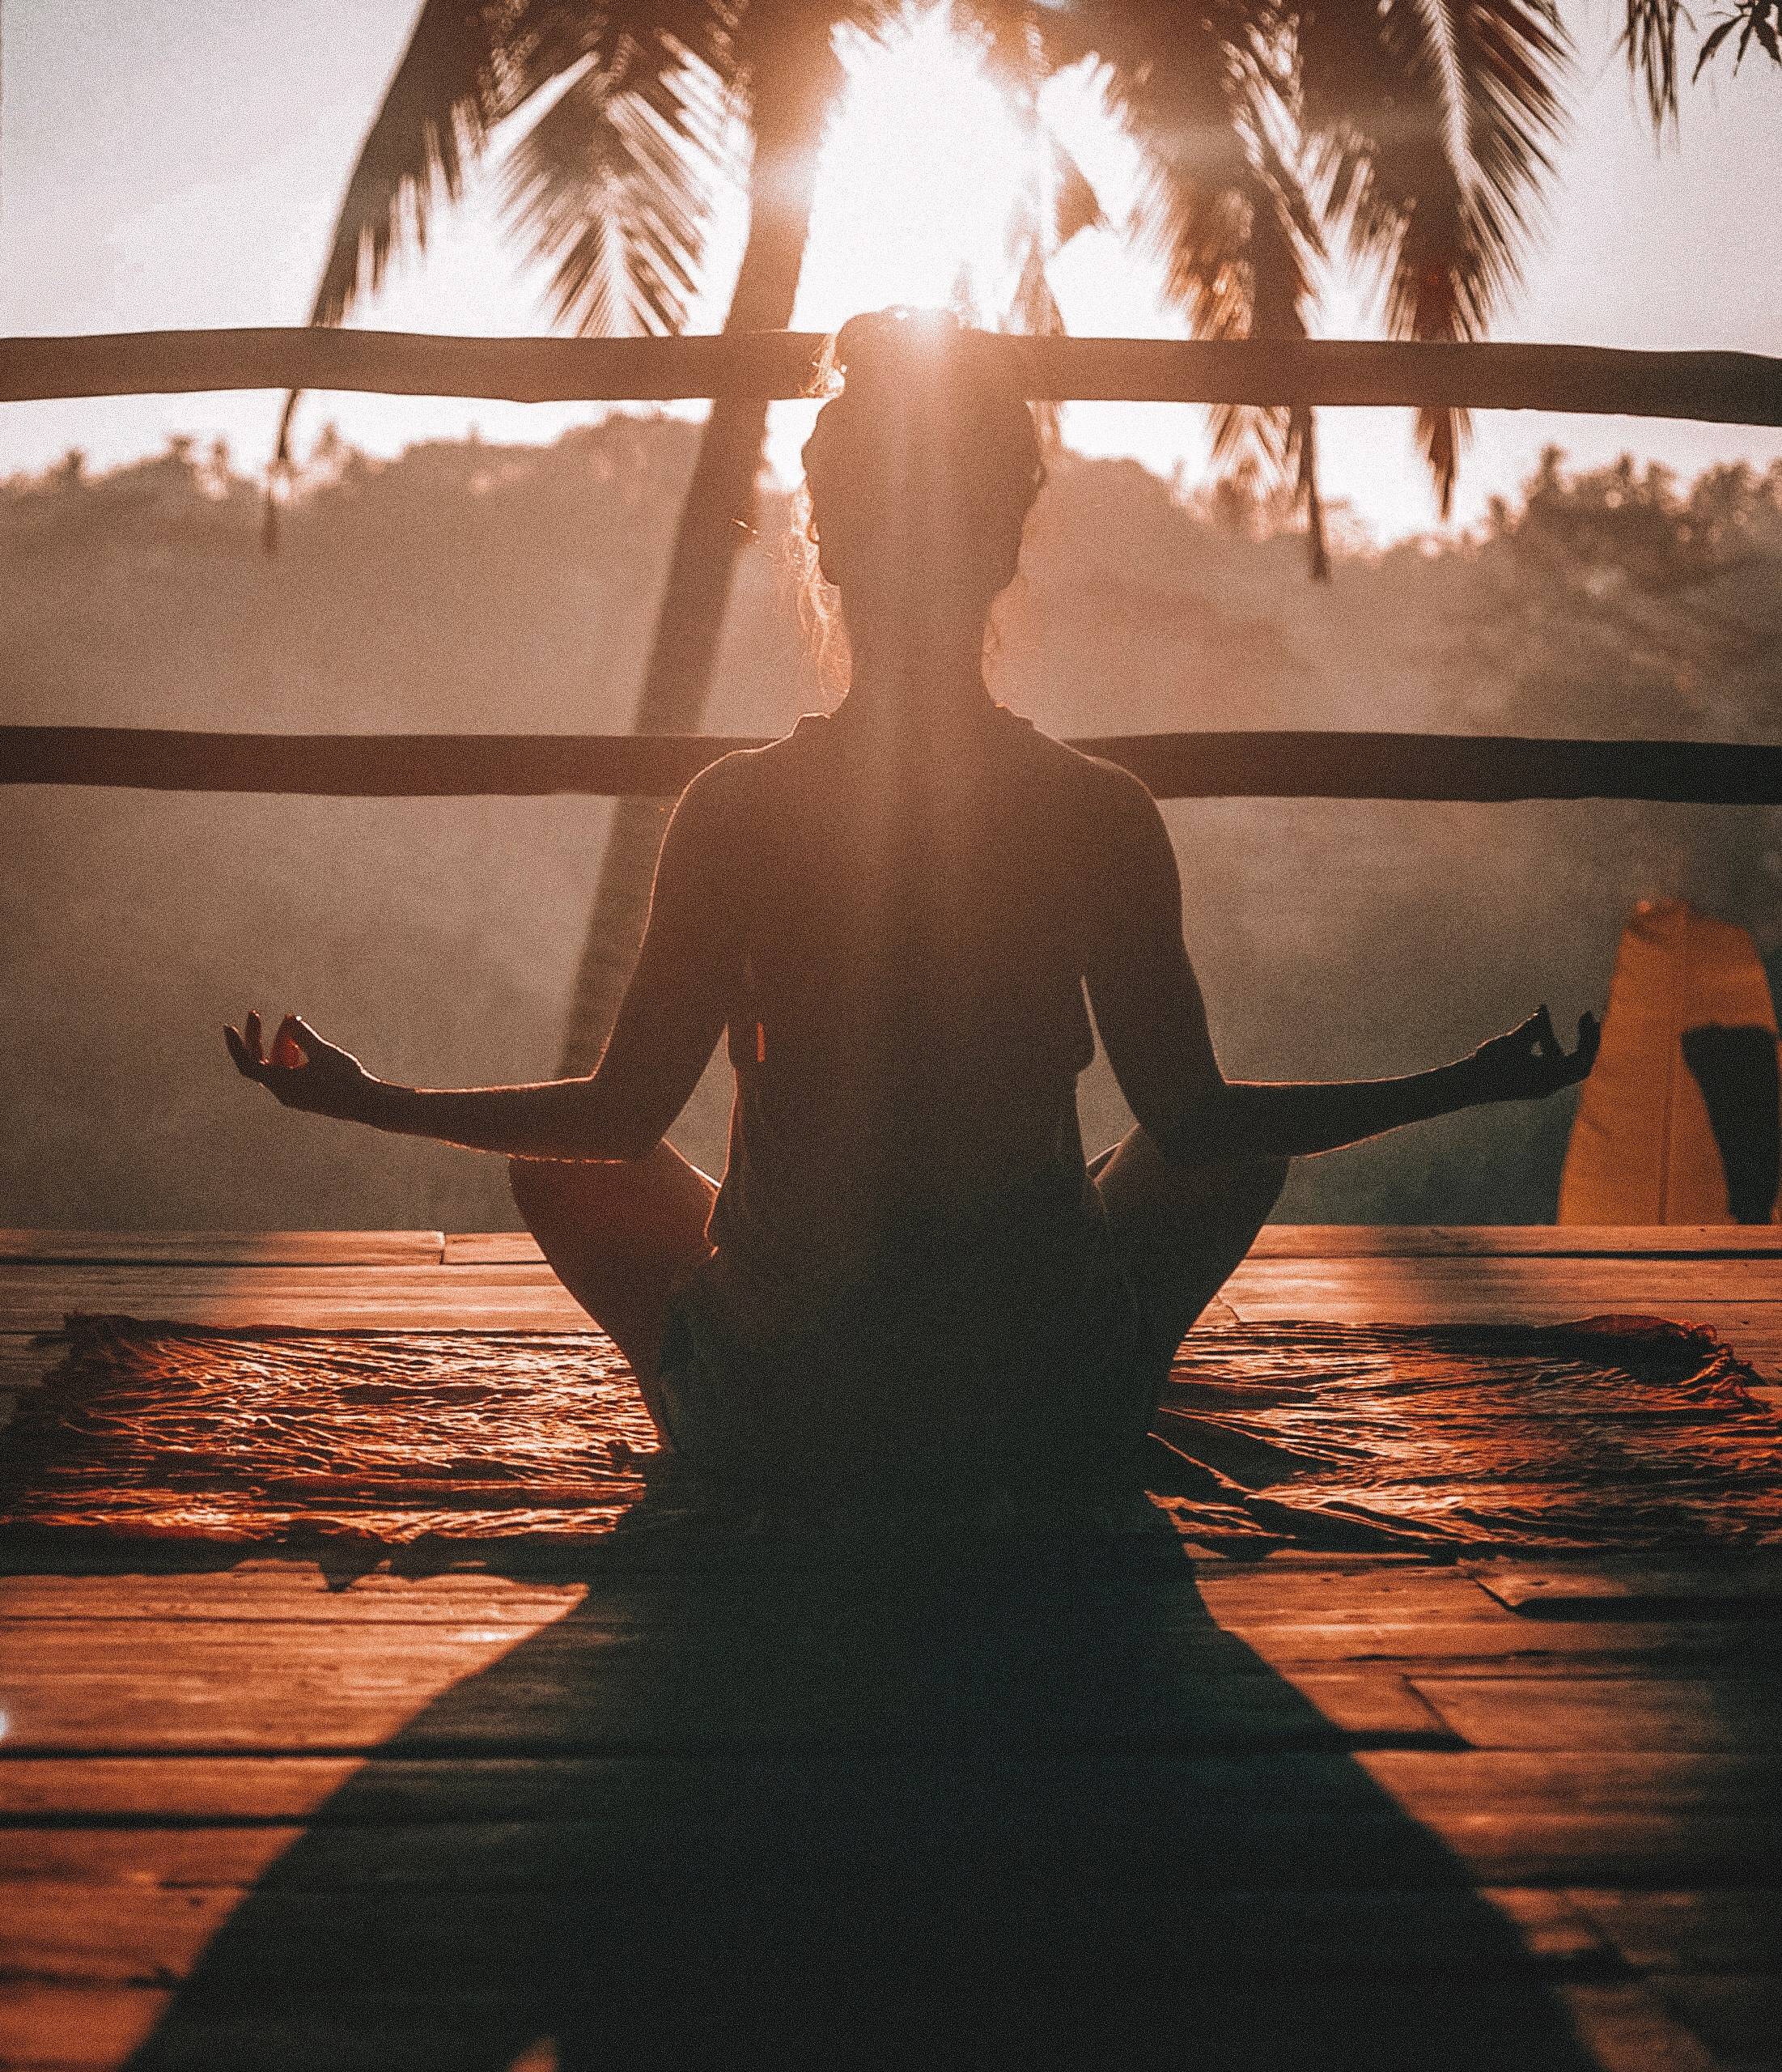 New Mindset After Doing Self-Love Meditation